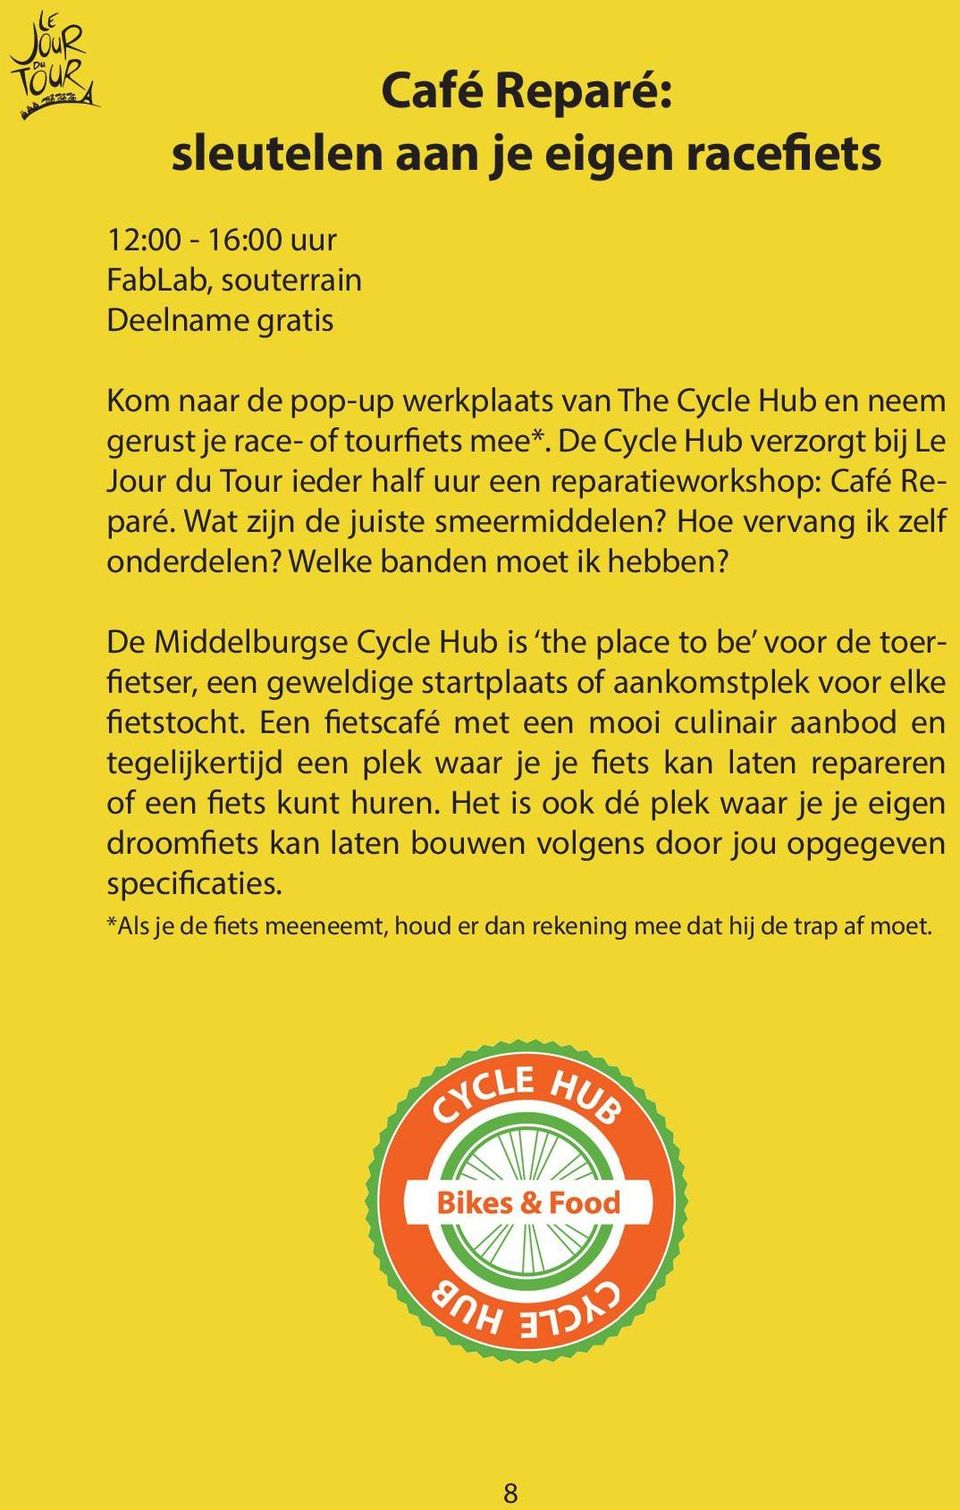 De Middelburgse Cycle Hub is the place to be voor de toerfietser, een geweldige startplaats of aankomstplek voor elke fietstocht.